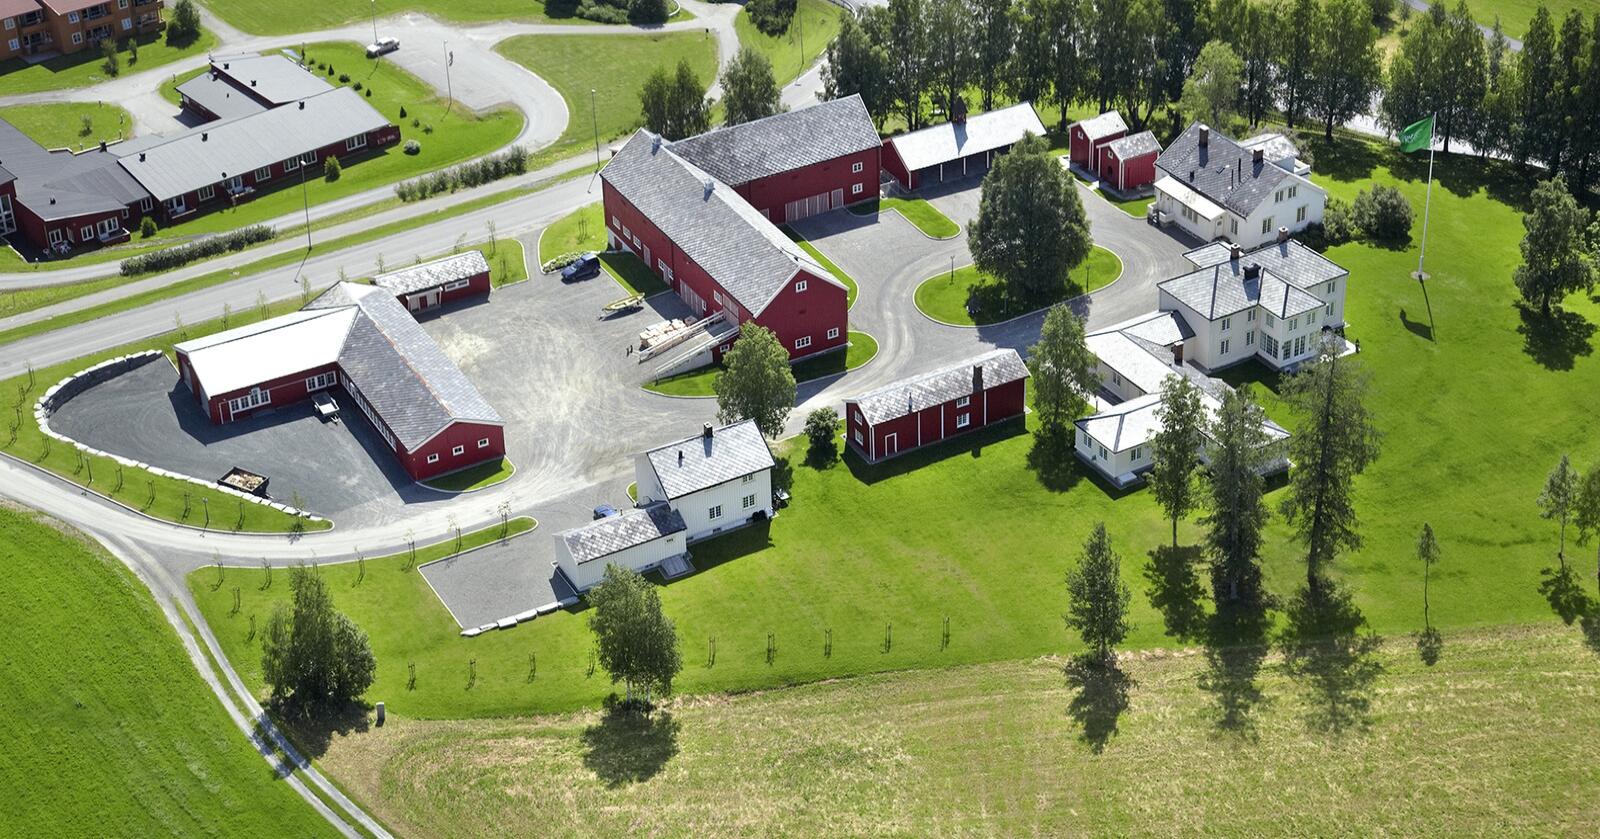 En av Norges største privateide eiendommer, Meraker Brug, skal legges ut for salg. Eiendommen er på 1,3 millioner mål. Foto: Meraker Brug